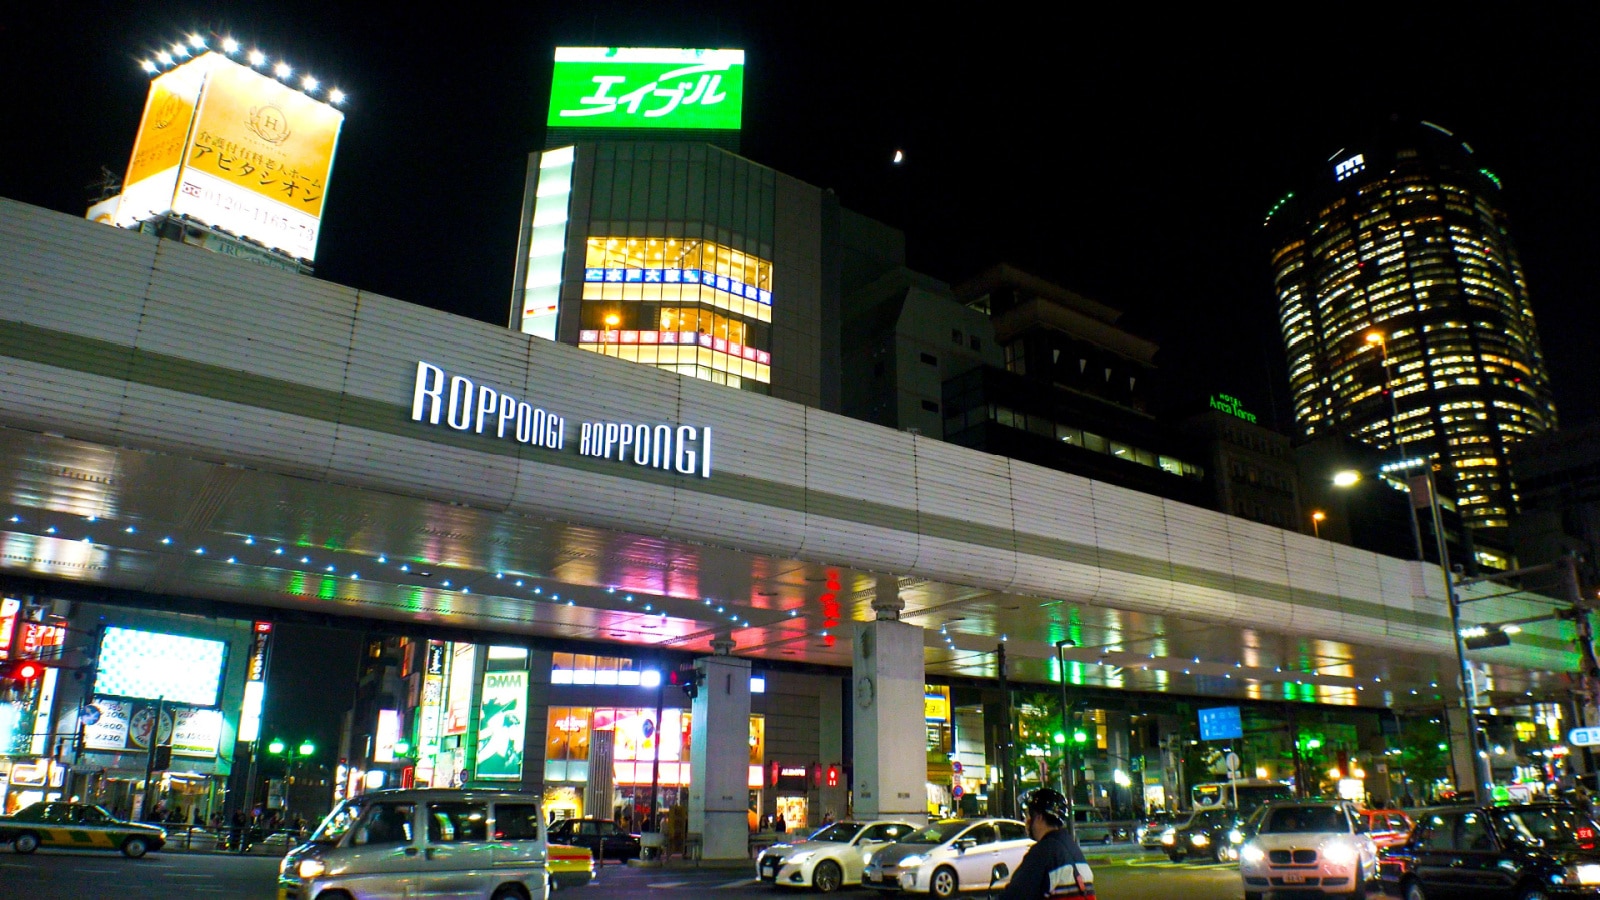 Roppongi at night